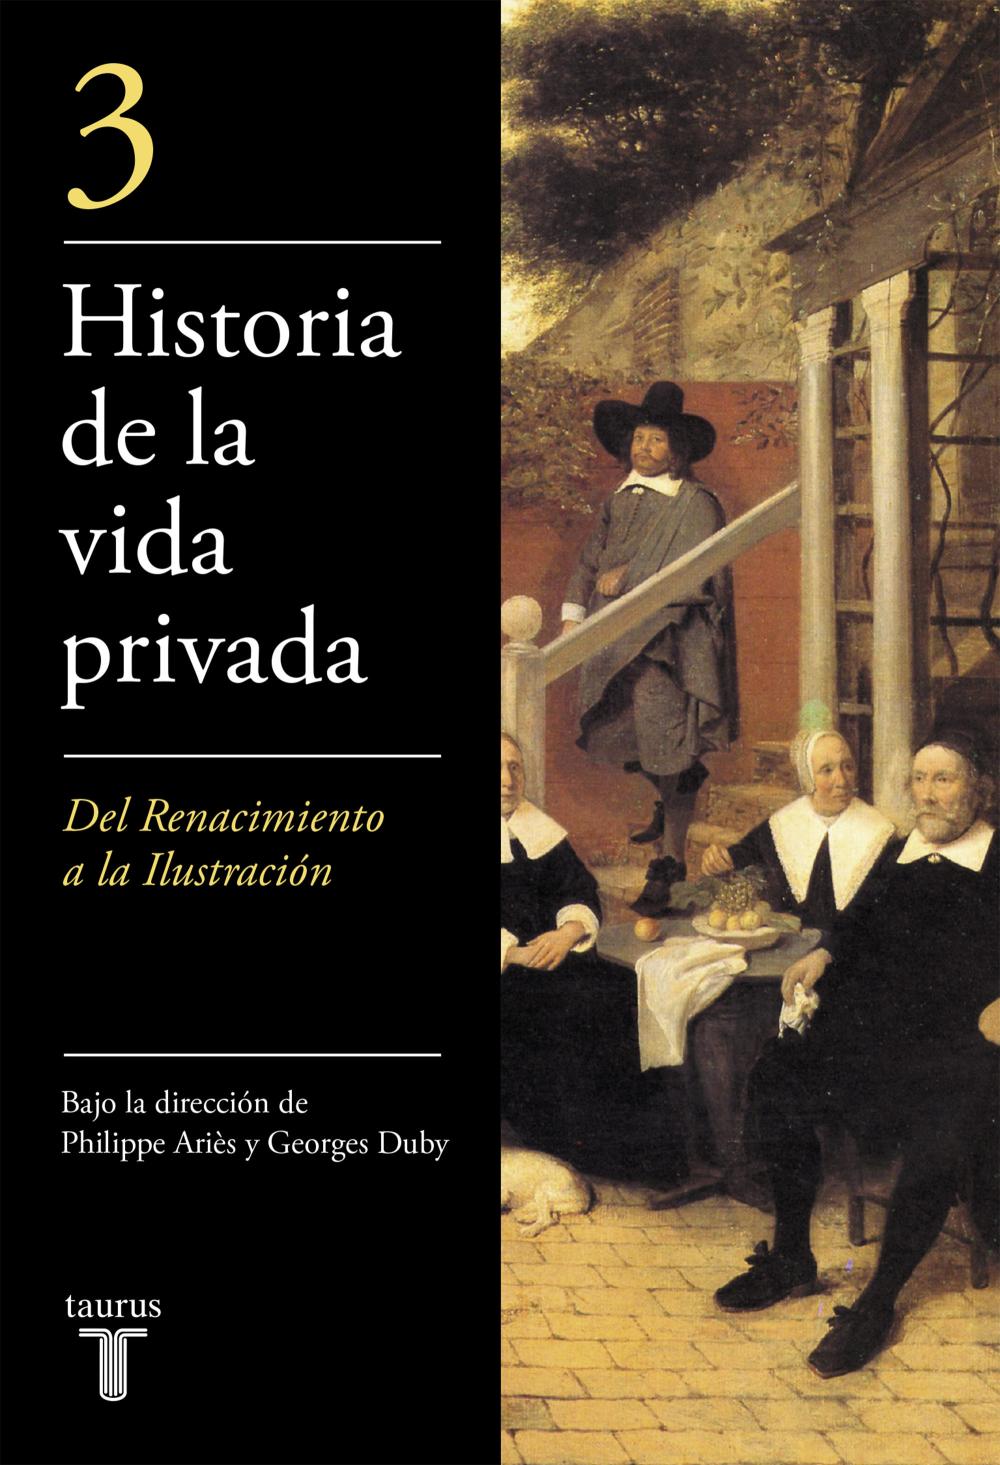 HISTORIA DE LA VIDA PRIVADA III - MINOR